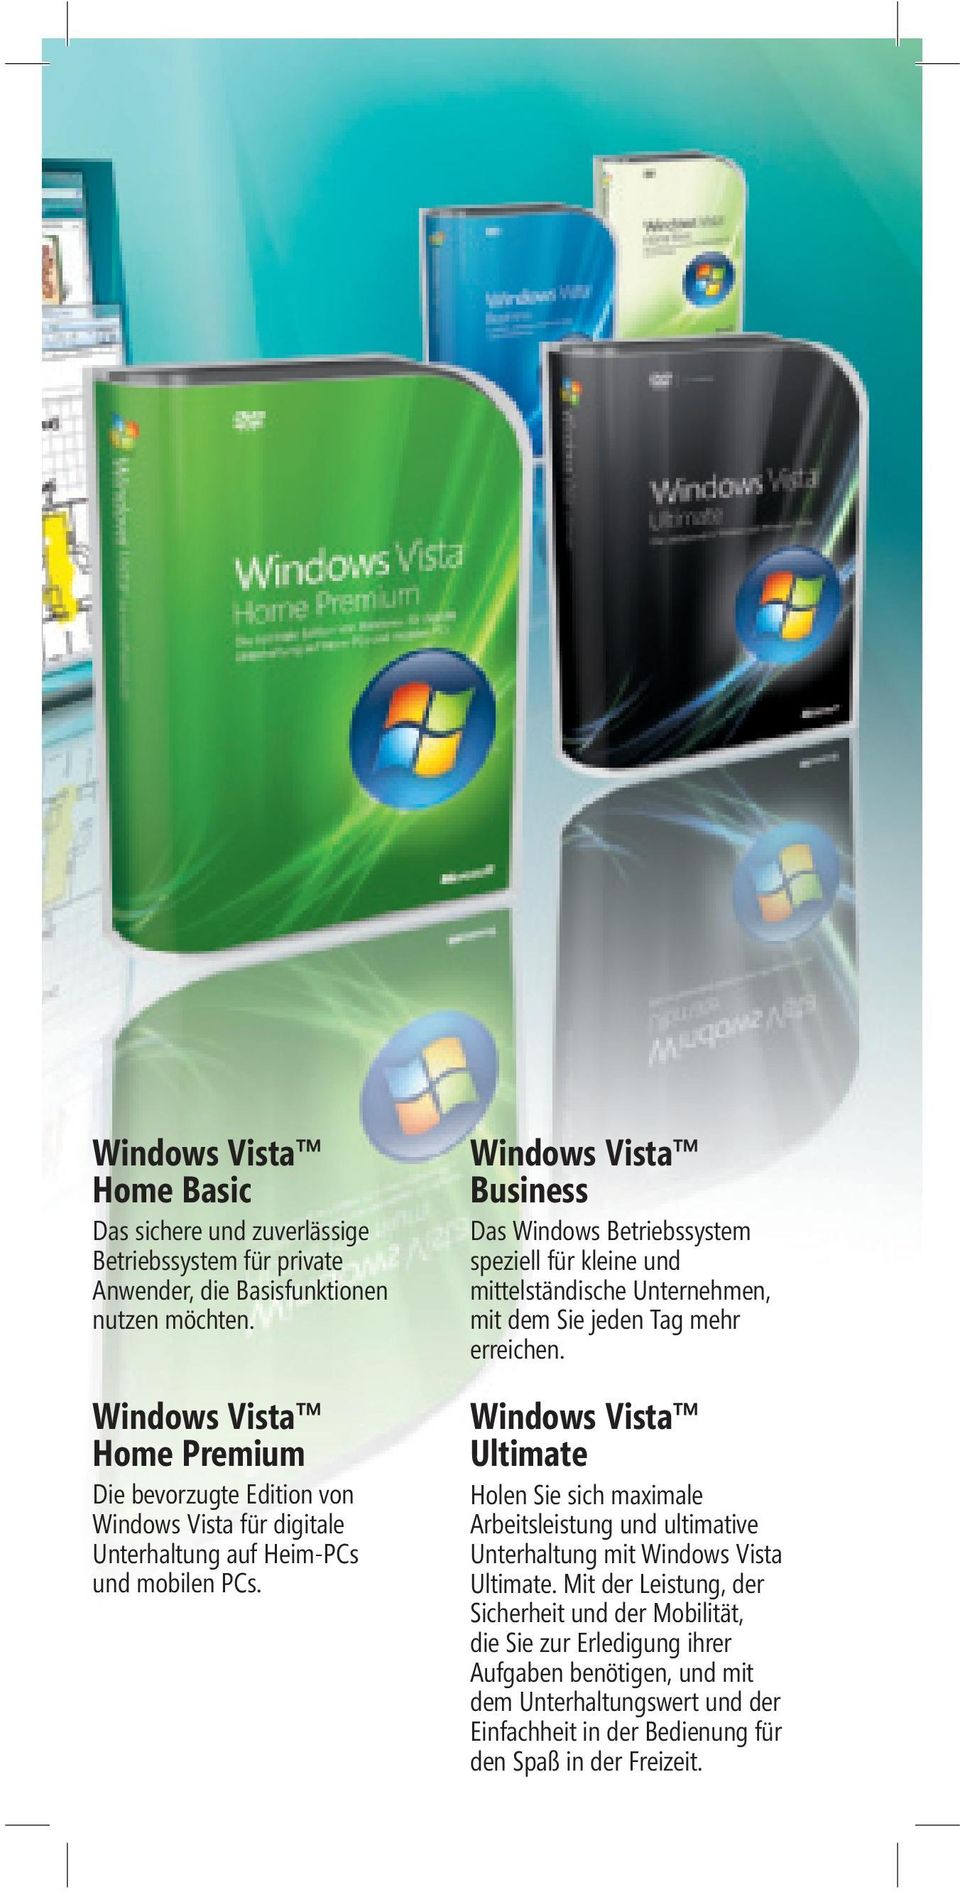 Windows Vista Business Das Windows Betriebssystem speziell für kleine und mittelständische Unternehmen, mit dem Sie jeden Tag mehr erreichen.